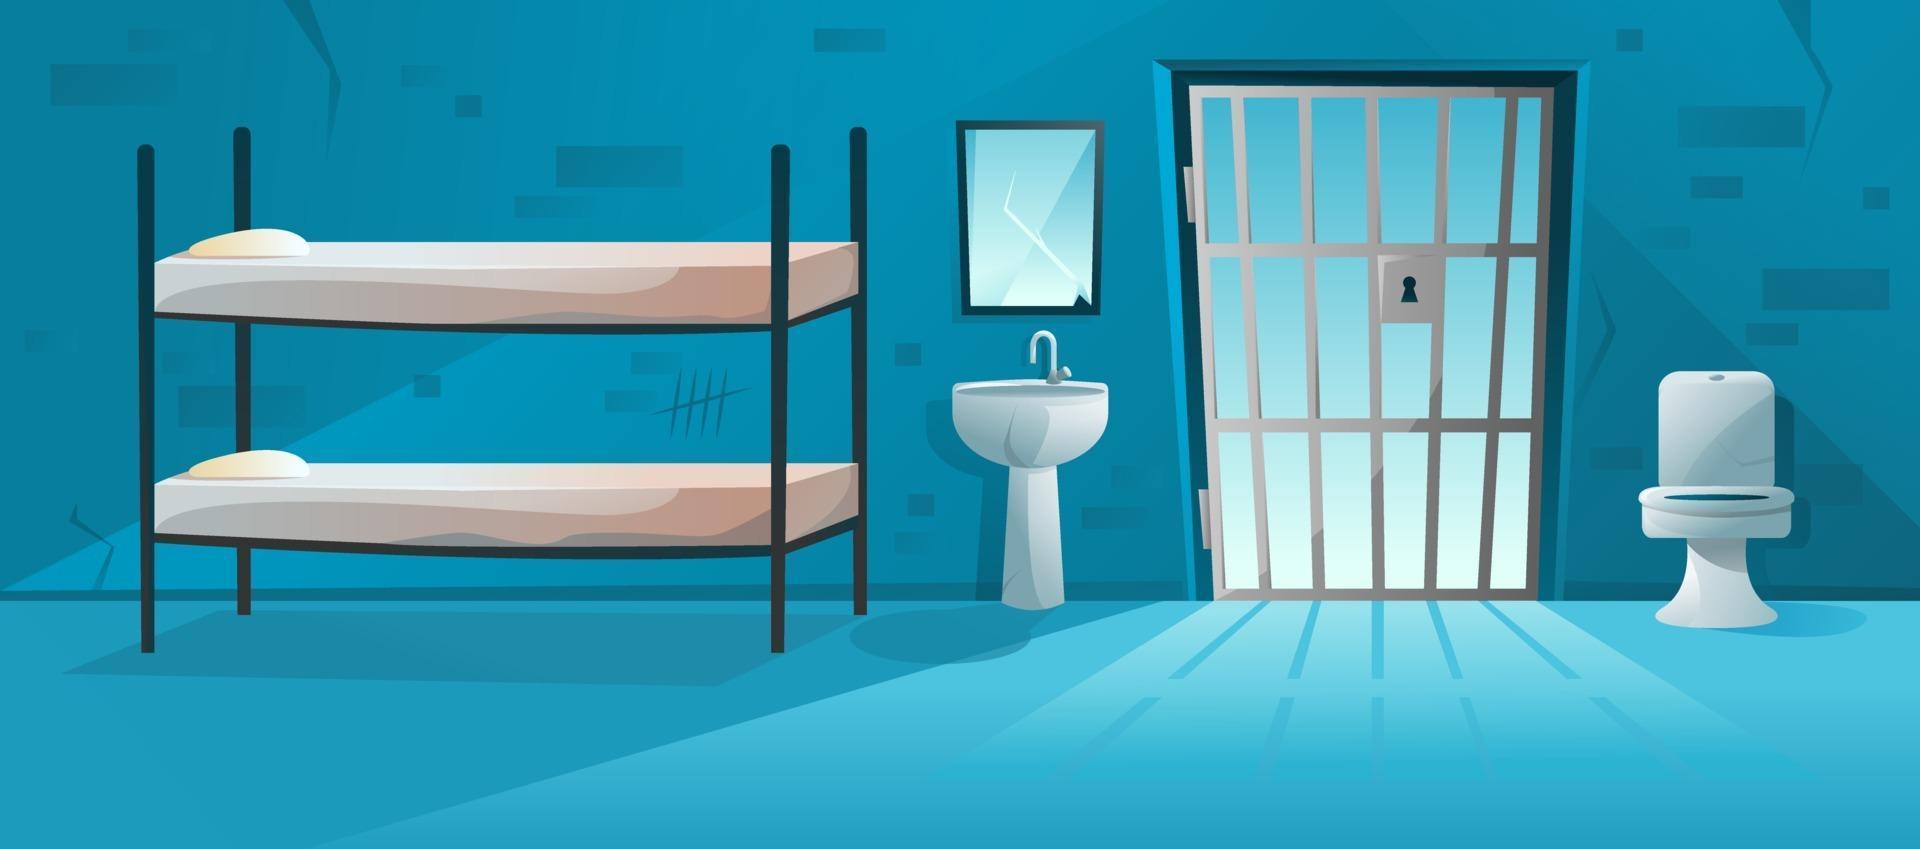 gevangeniscelinterieur met rooster, roosterdeur, stapelbed, wc-pot, wastafel en gekraste, gebarsten bakstenen muren illustratie. gevangenis kamer in cartoon-stijl vector